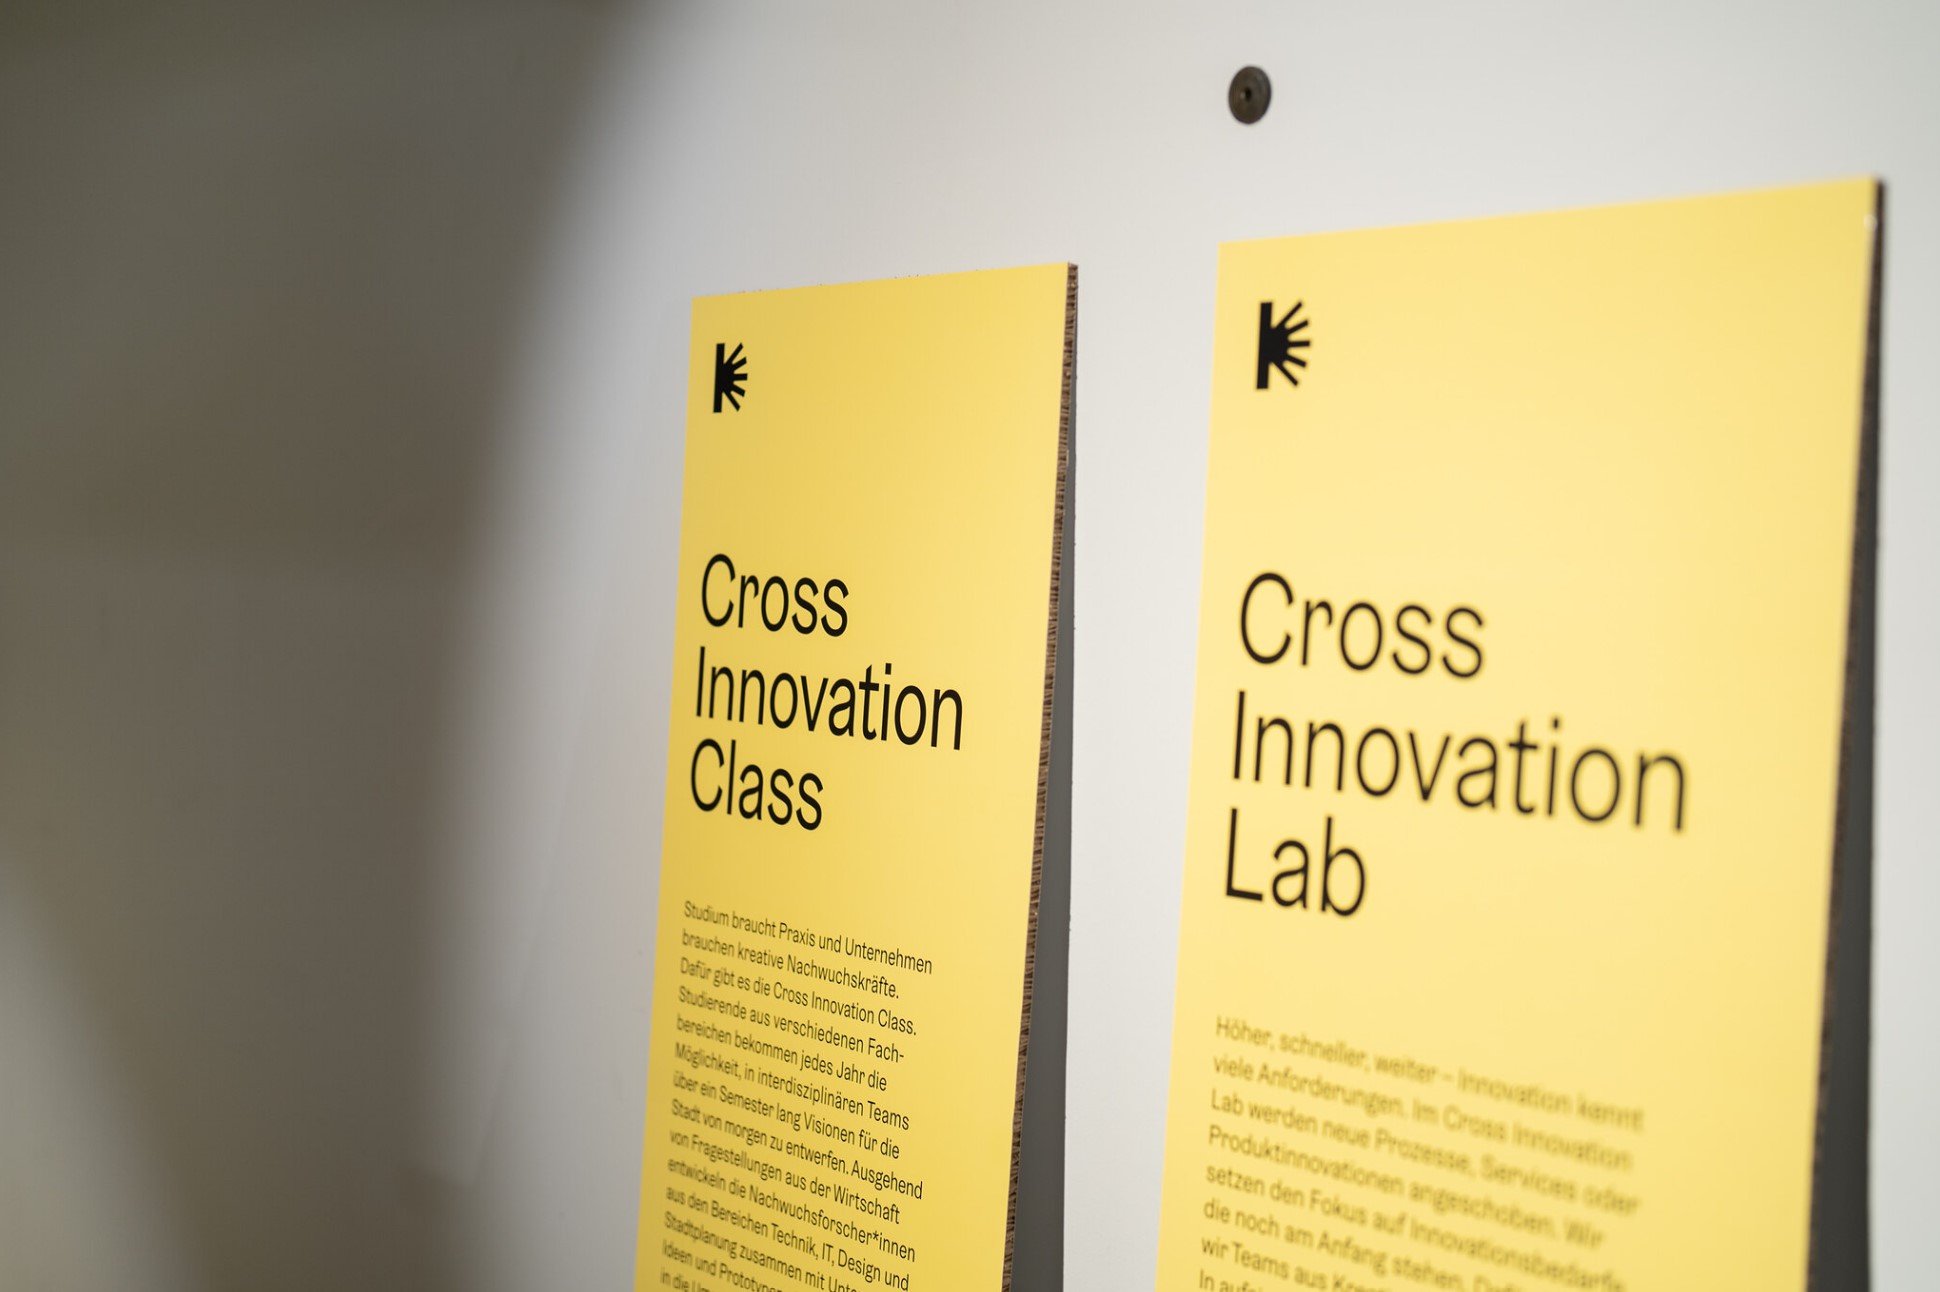 Cross innovation formats - 